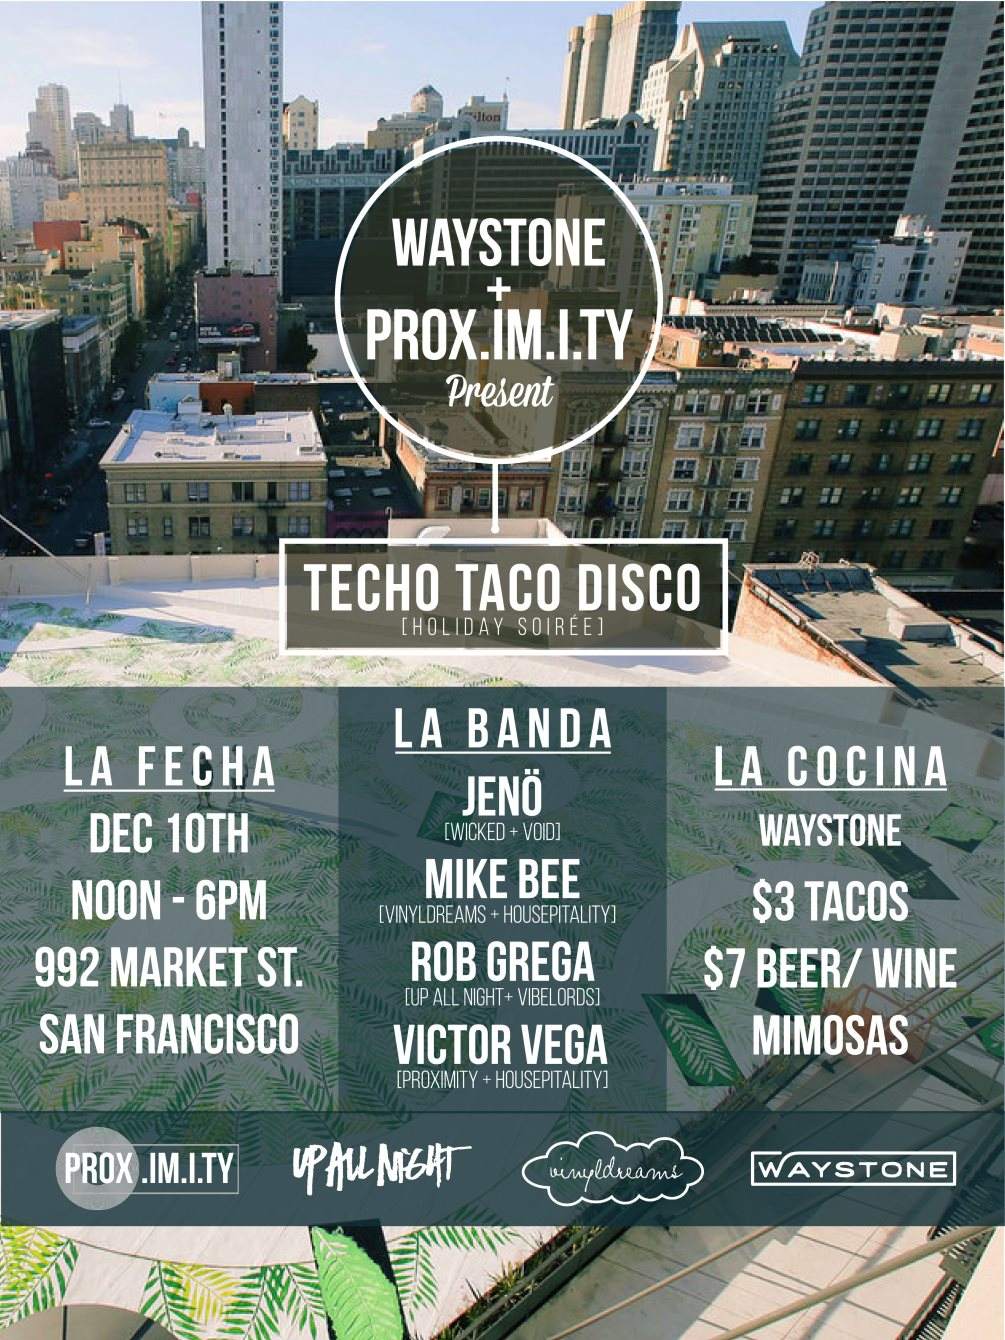 Waystone + PROX.IM.I.TY present: Techo Taco Disco - Página frontal